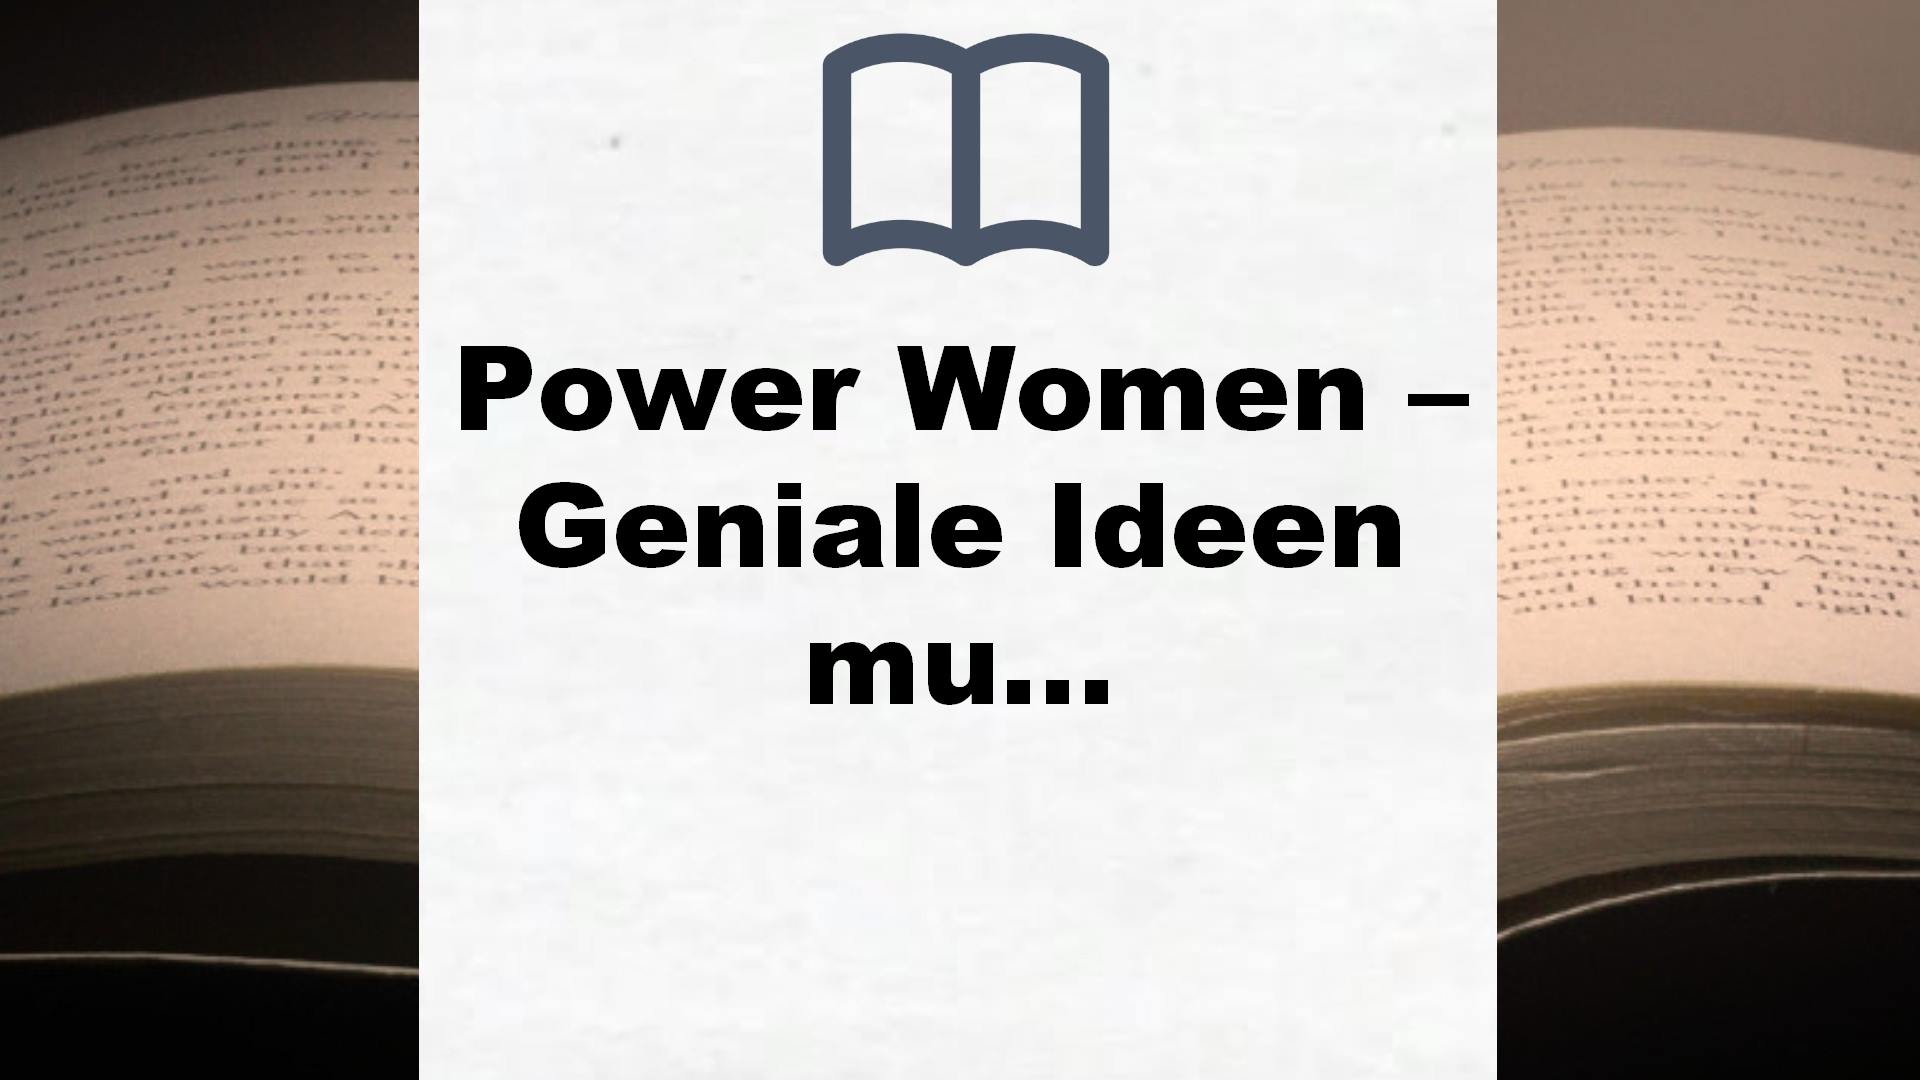 Power Women – Geniale Ideen mutiger Frauen: Was würden sie dir raten? | Spannende Porträts interessanter Frauen rund um die Welt – Buchrezension